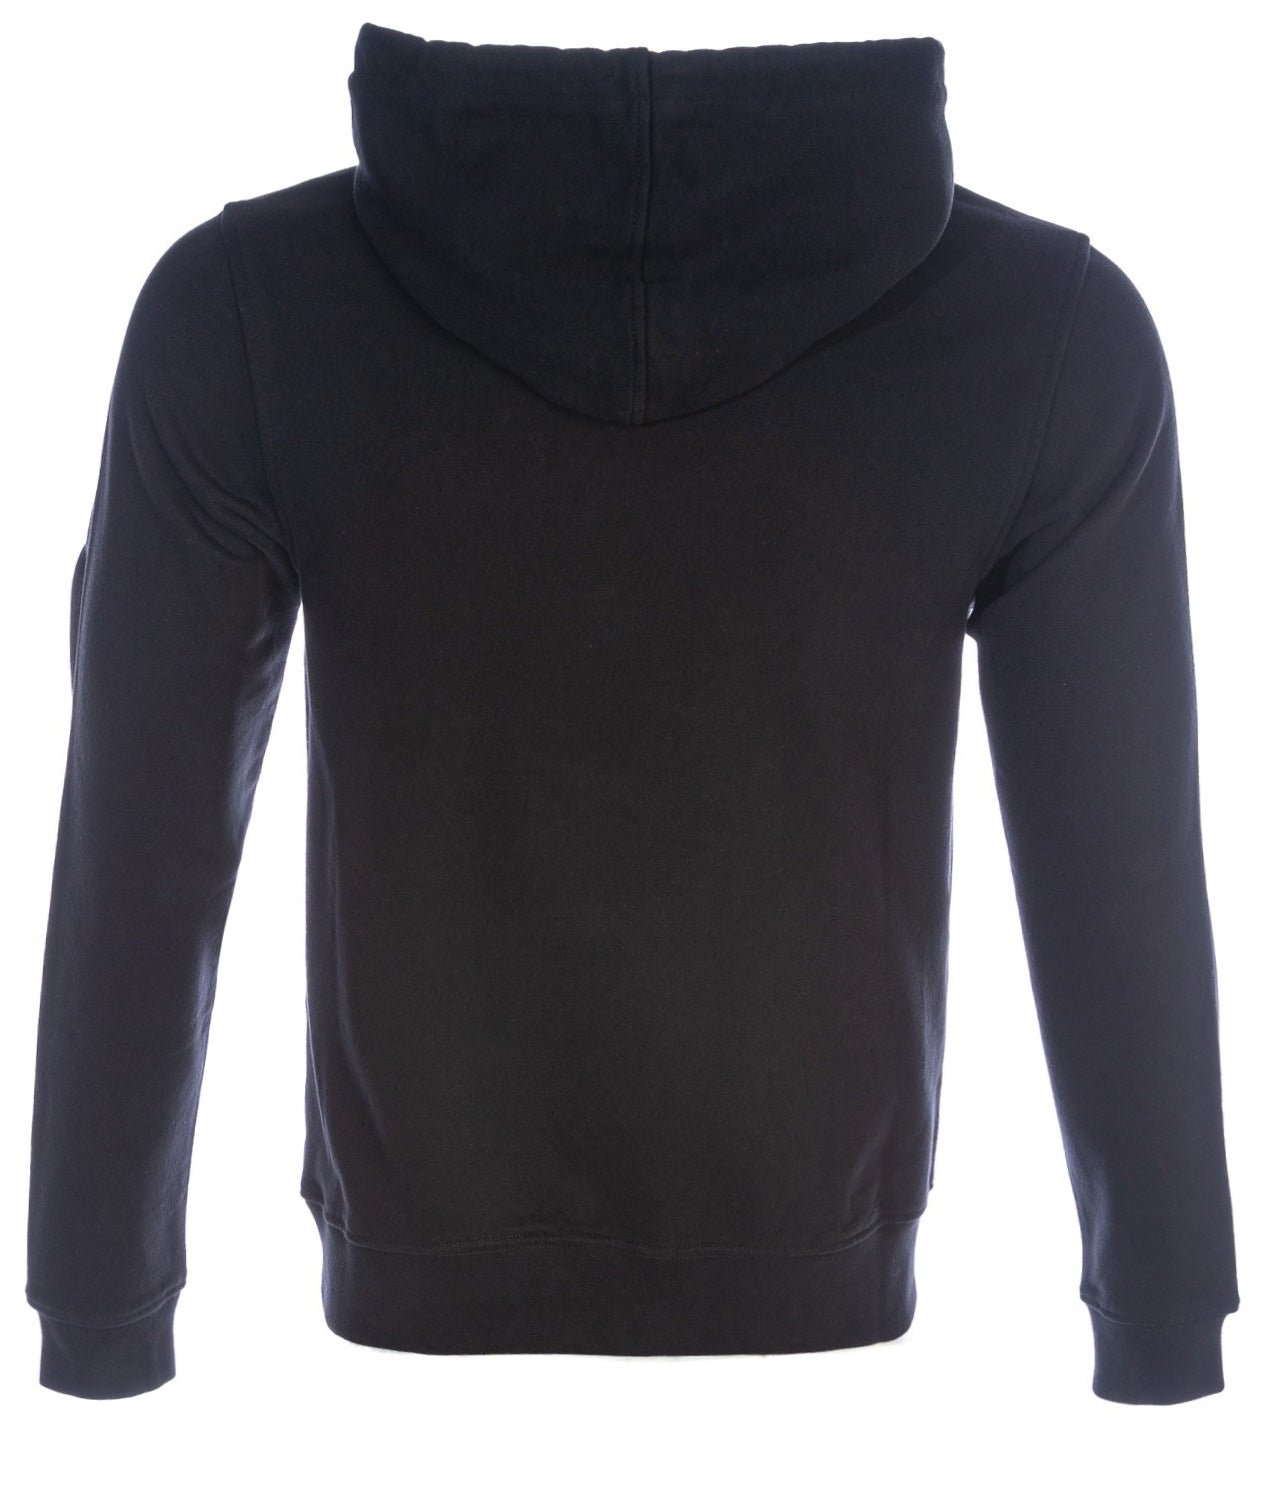 Belstaff Embroidery Applique Sweatshirt in Black